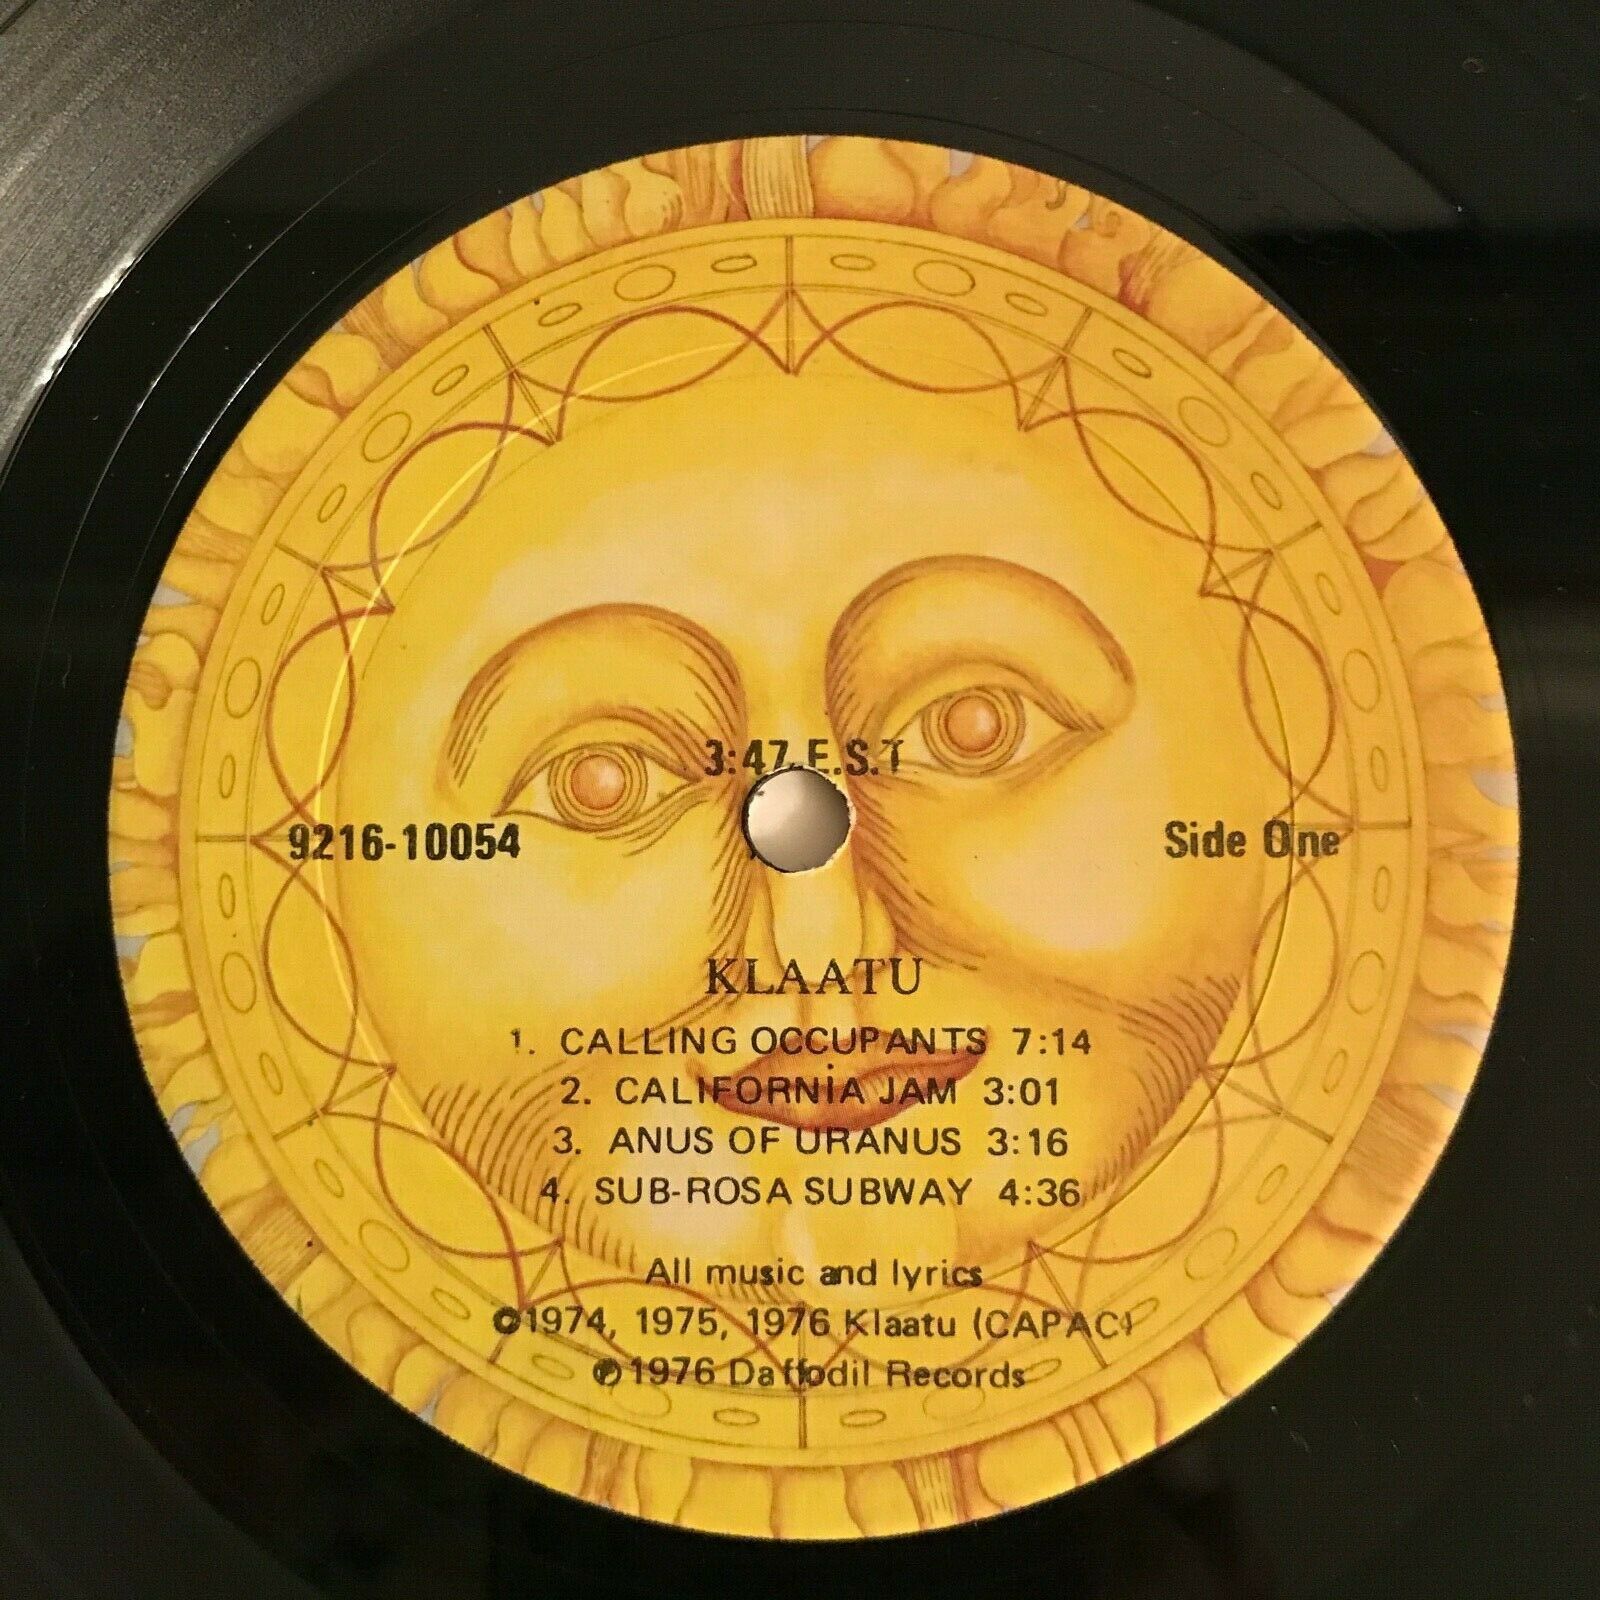 popsike.com - Klaatu Self Titled 3:47 E.S.T. Vinyl LP Capitol 1976  Psychedelic Rock Beatles??? - auction details